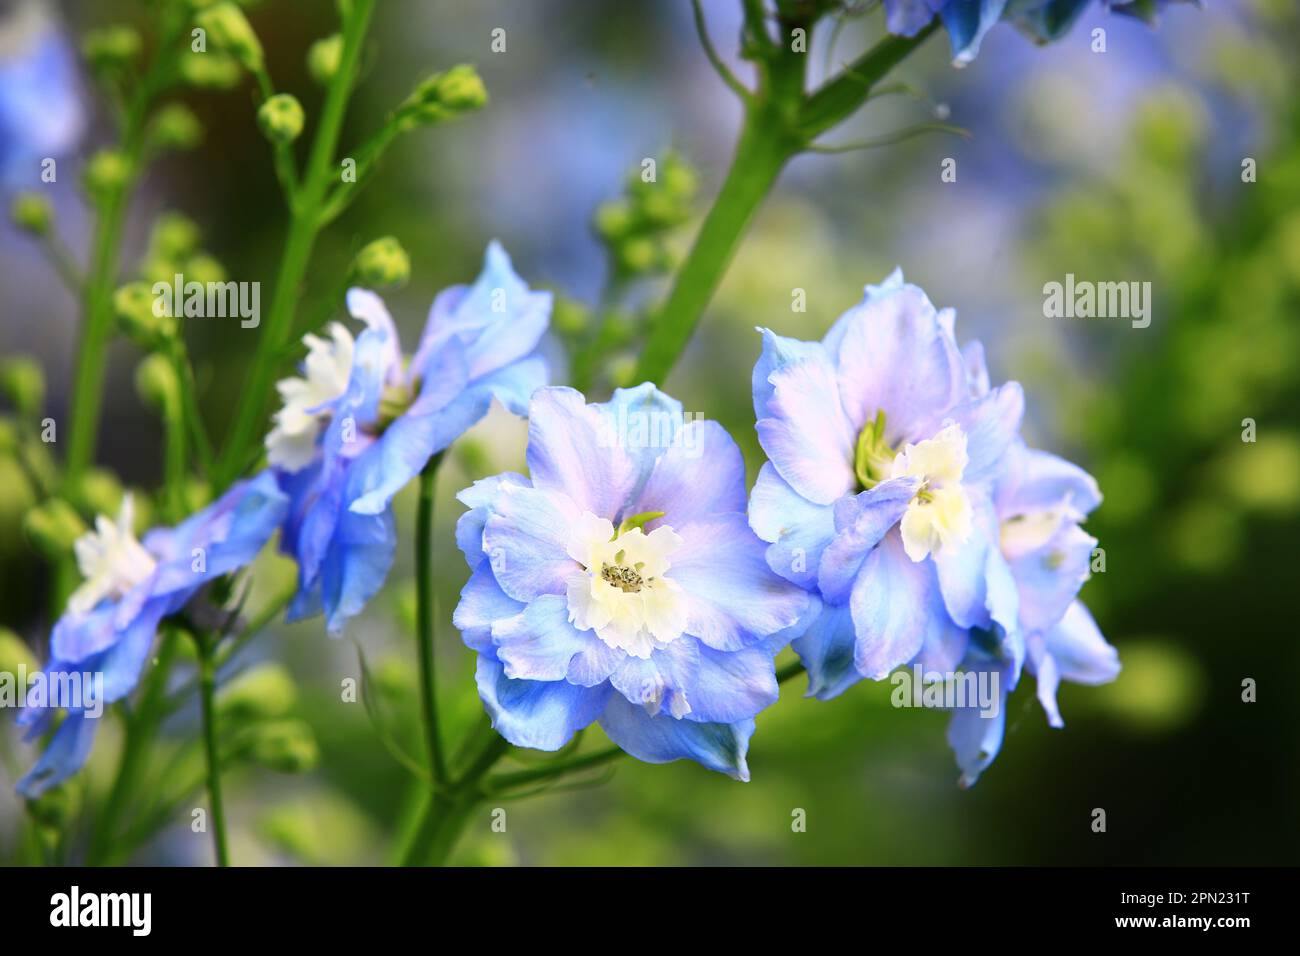 Fioritura colorful Delphinium, (Candle Delphinium, English Larkspur, Tall Larkspur) fiori, primo piano dei fiori blu Delphinium fiorire nel giardino Foto Stock